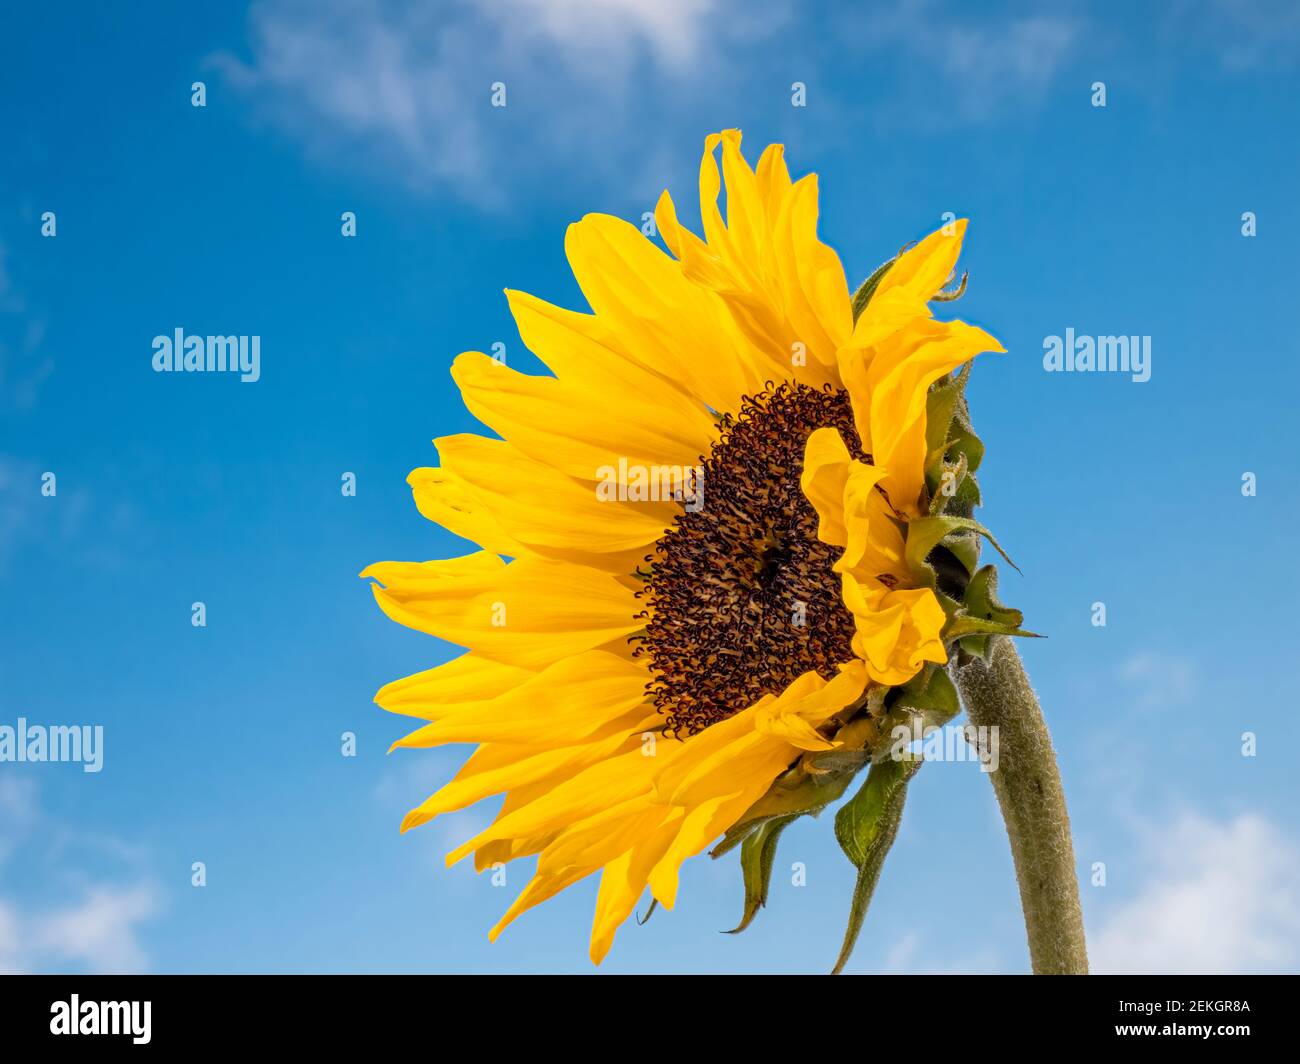 Gros plan du tournesol jaune (Helianthus) contre le ciel bleu Banque D'Images